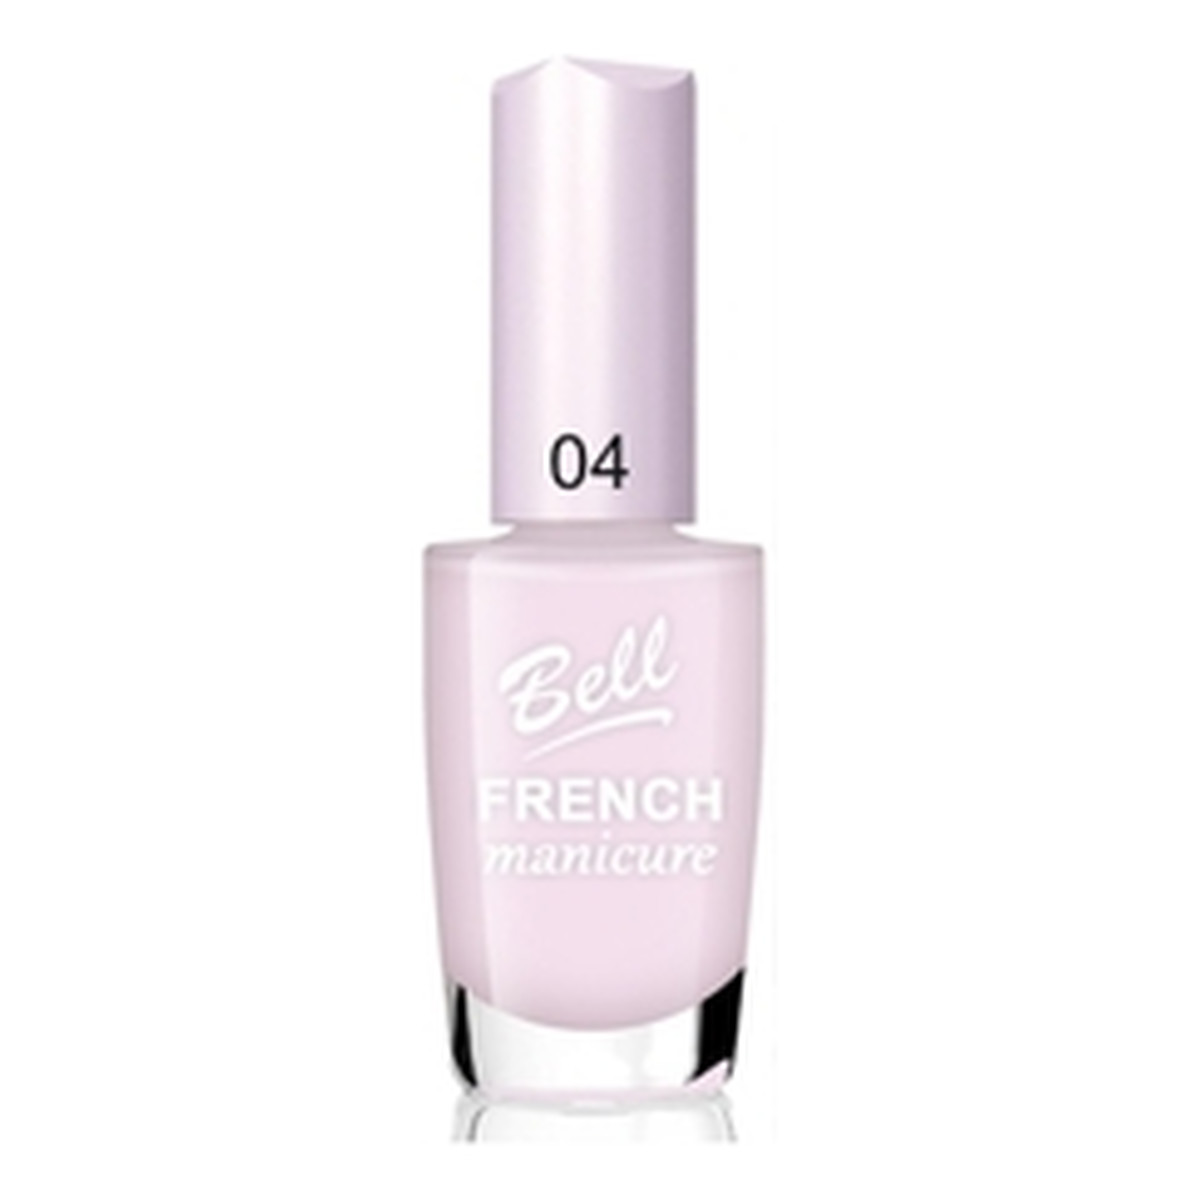 Bell French Manicure Szybkoschnący Lakier Do Paznokci 11ml